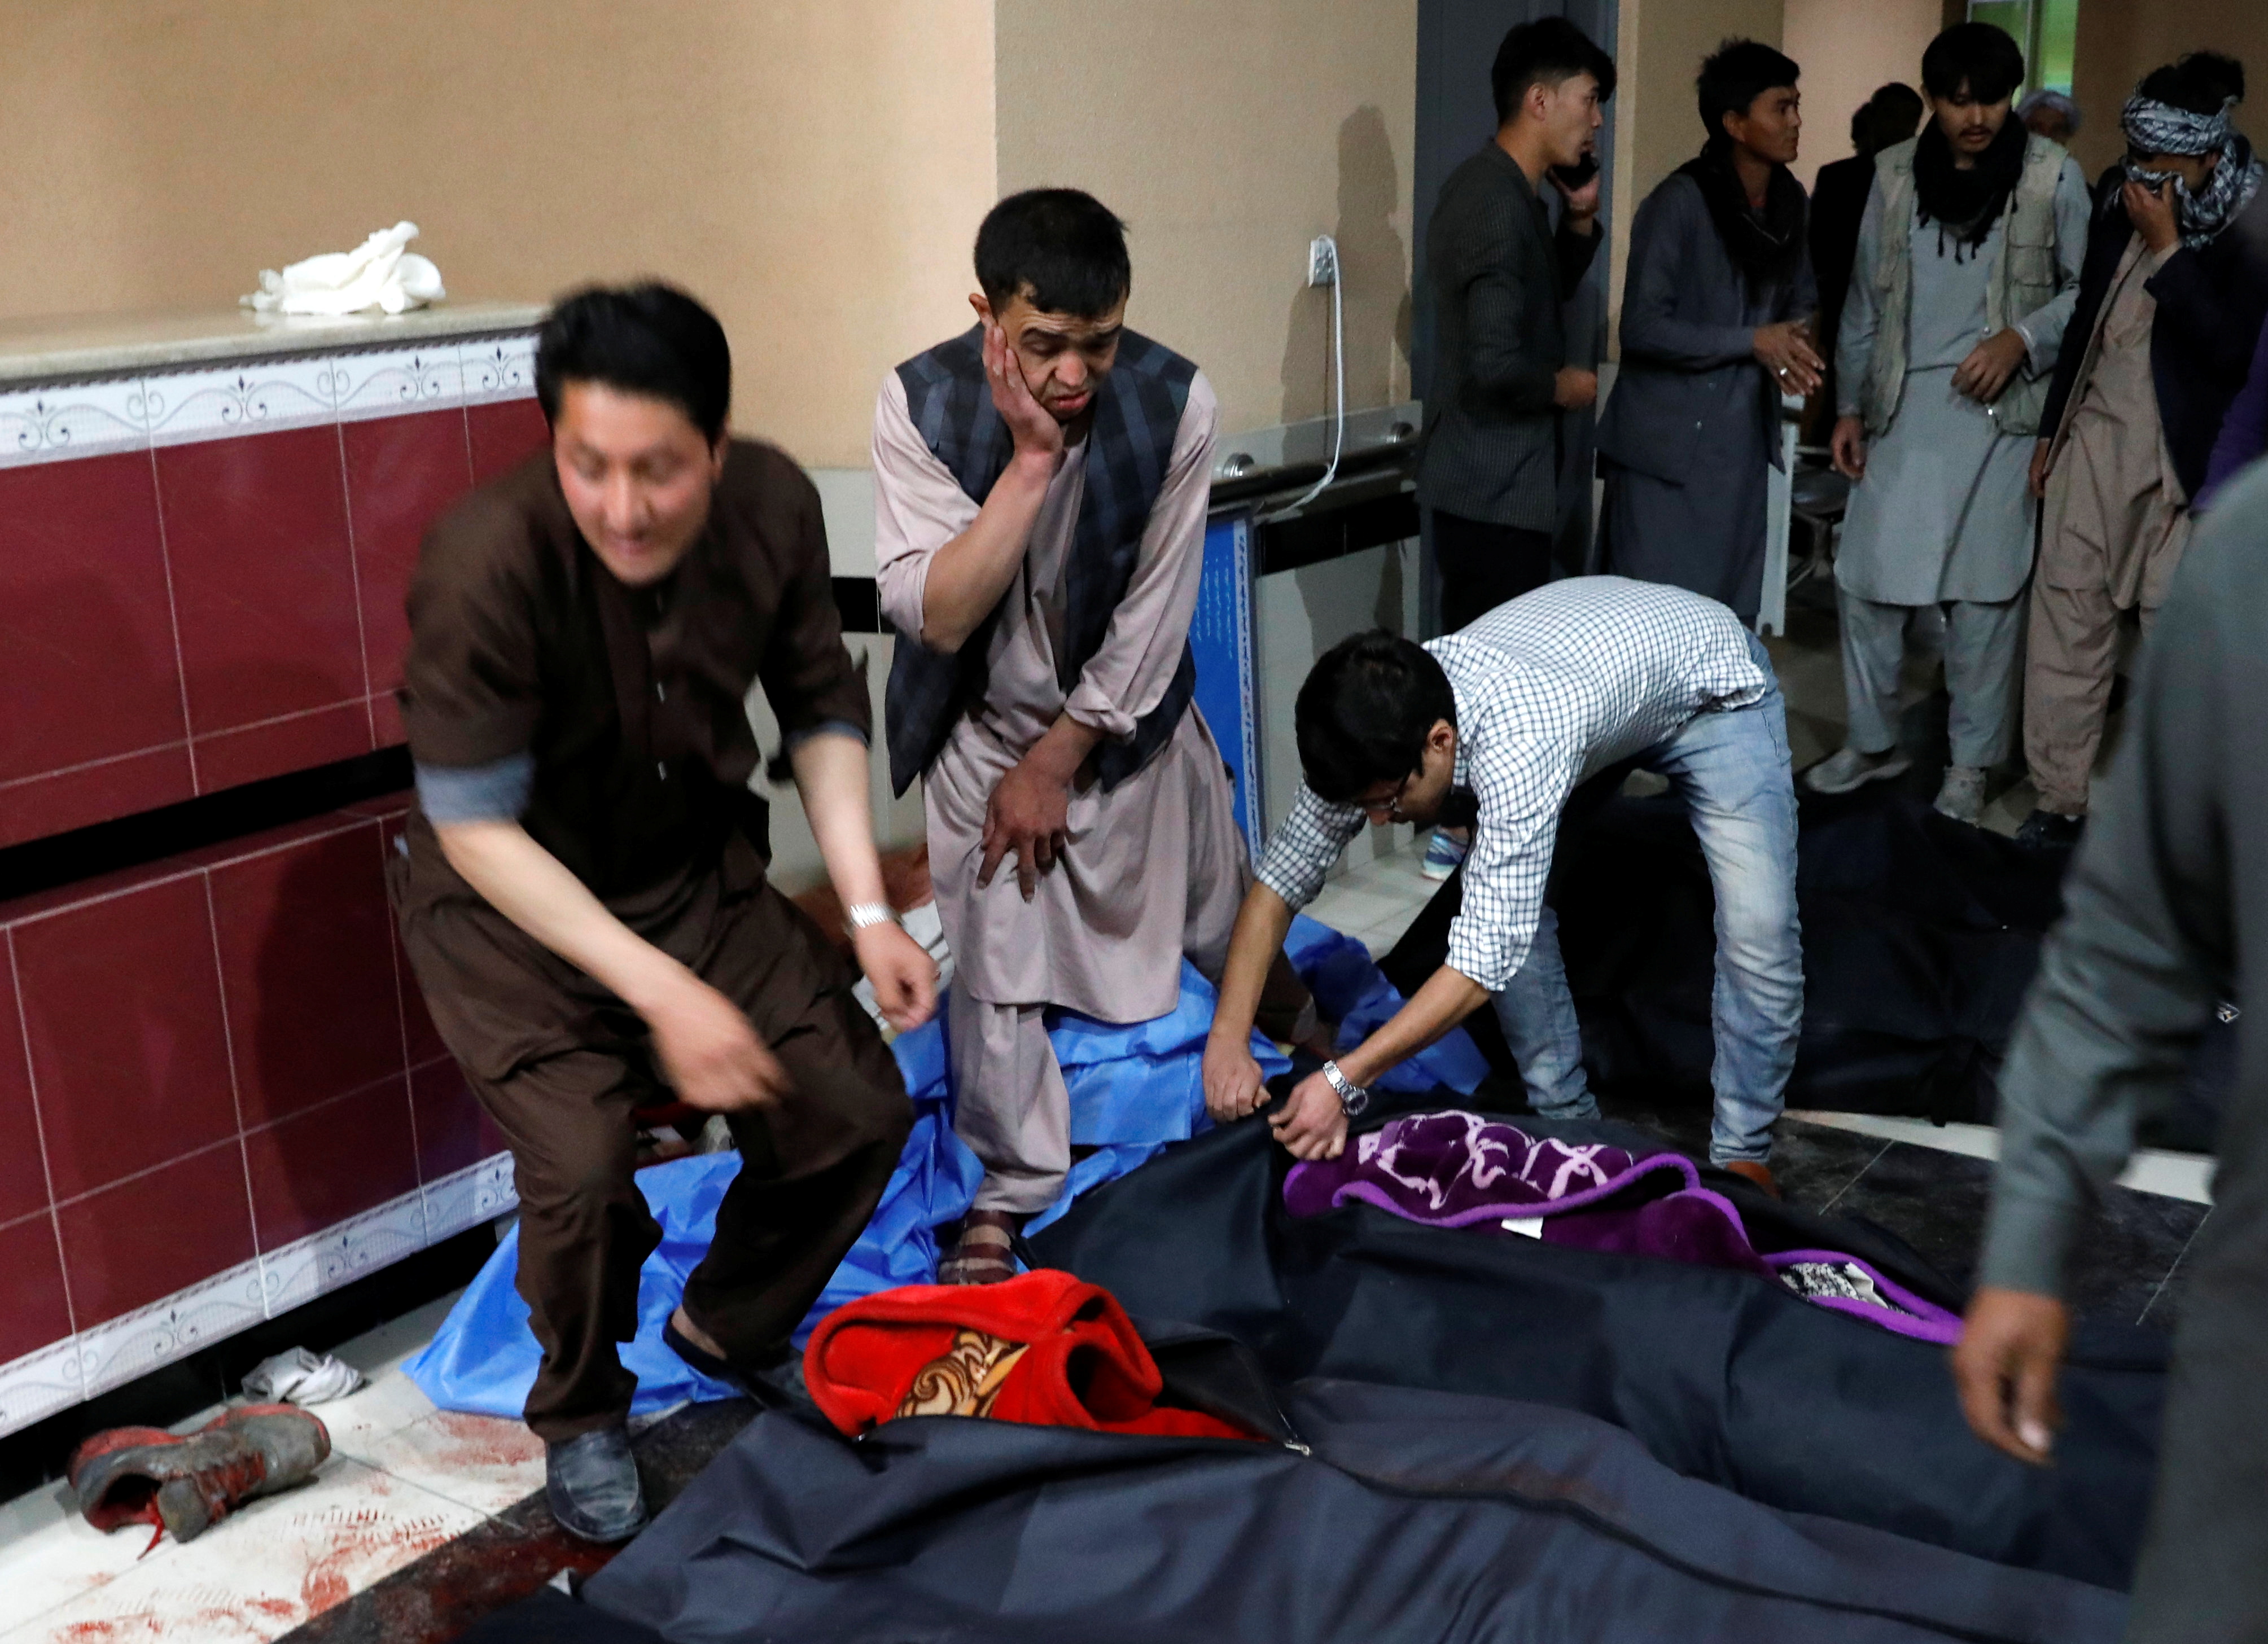 Un atacante suicida mata a 24 personas en un centro educativo de Kabul